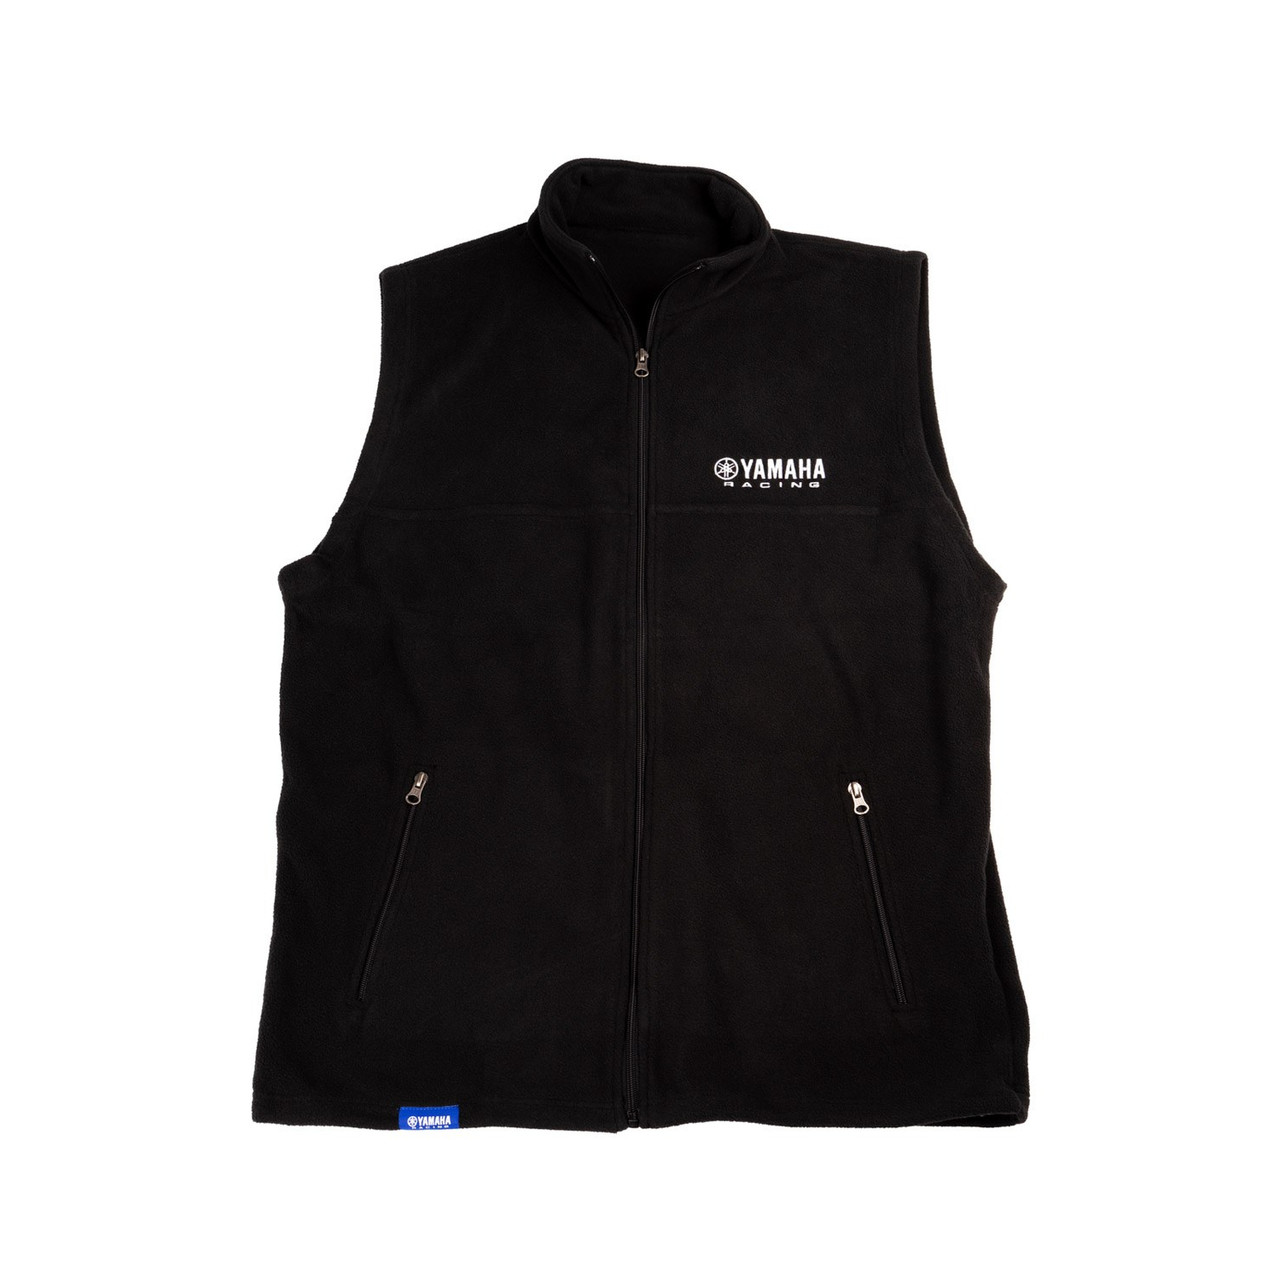 Yamaha New OEM Men's Branded Polyester Black Racing Zip Up Vest, CRP-20VYR-BK-LG